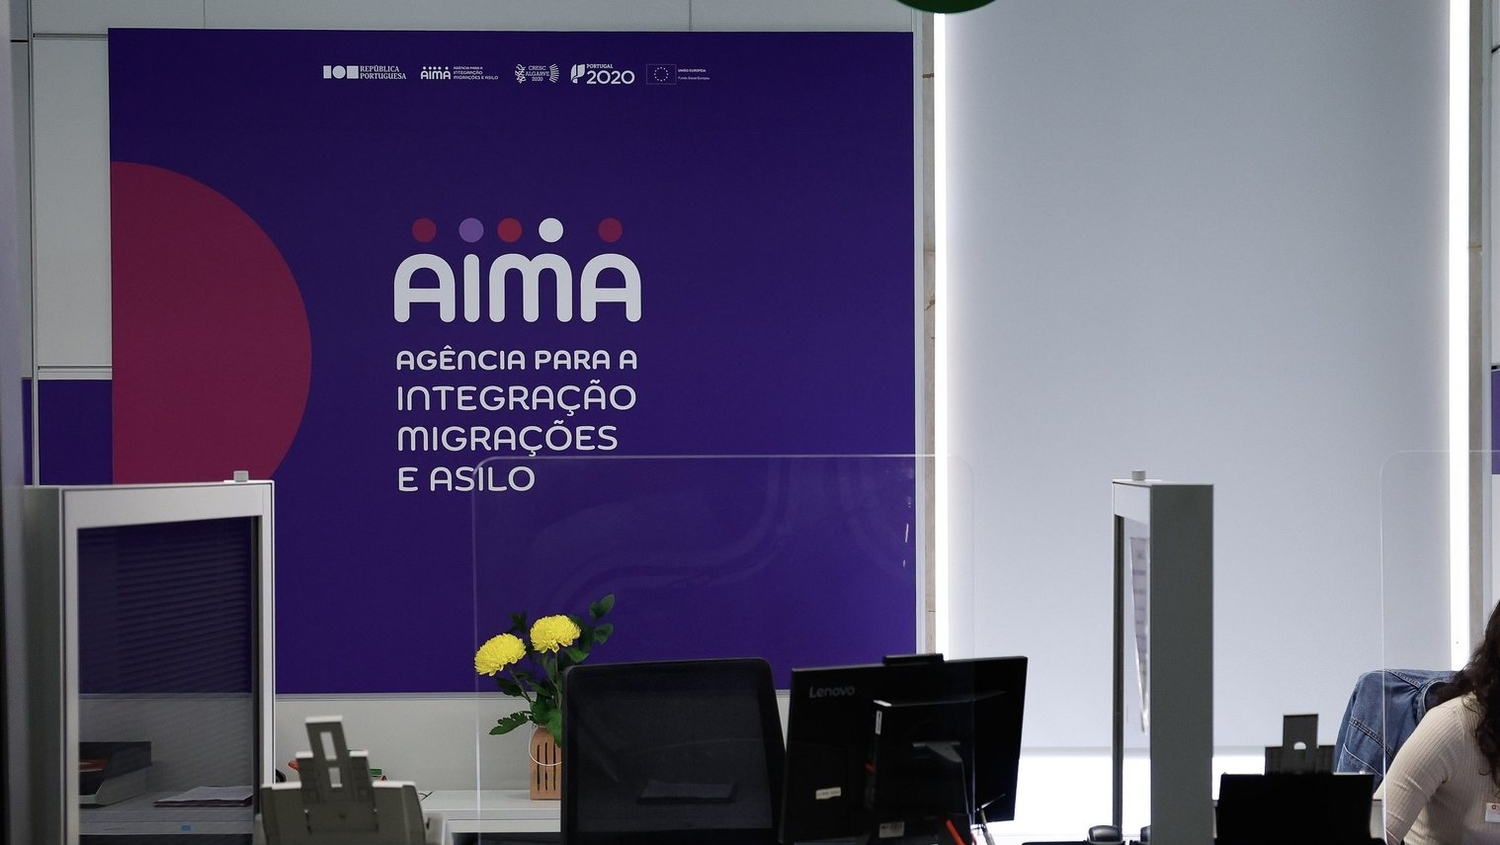 AIMA notifica migrantes de pagamentos de taxas cinco vezes superiores ao esperado